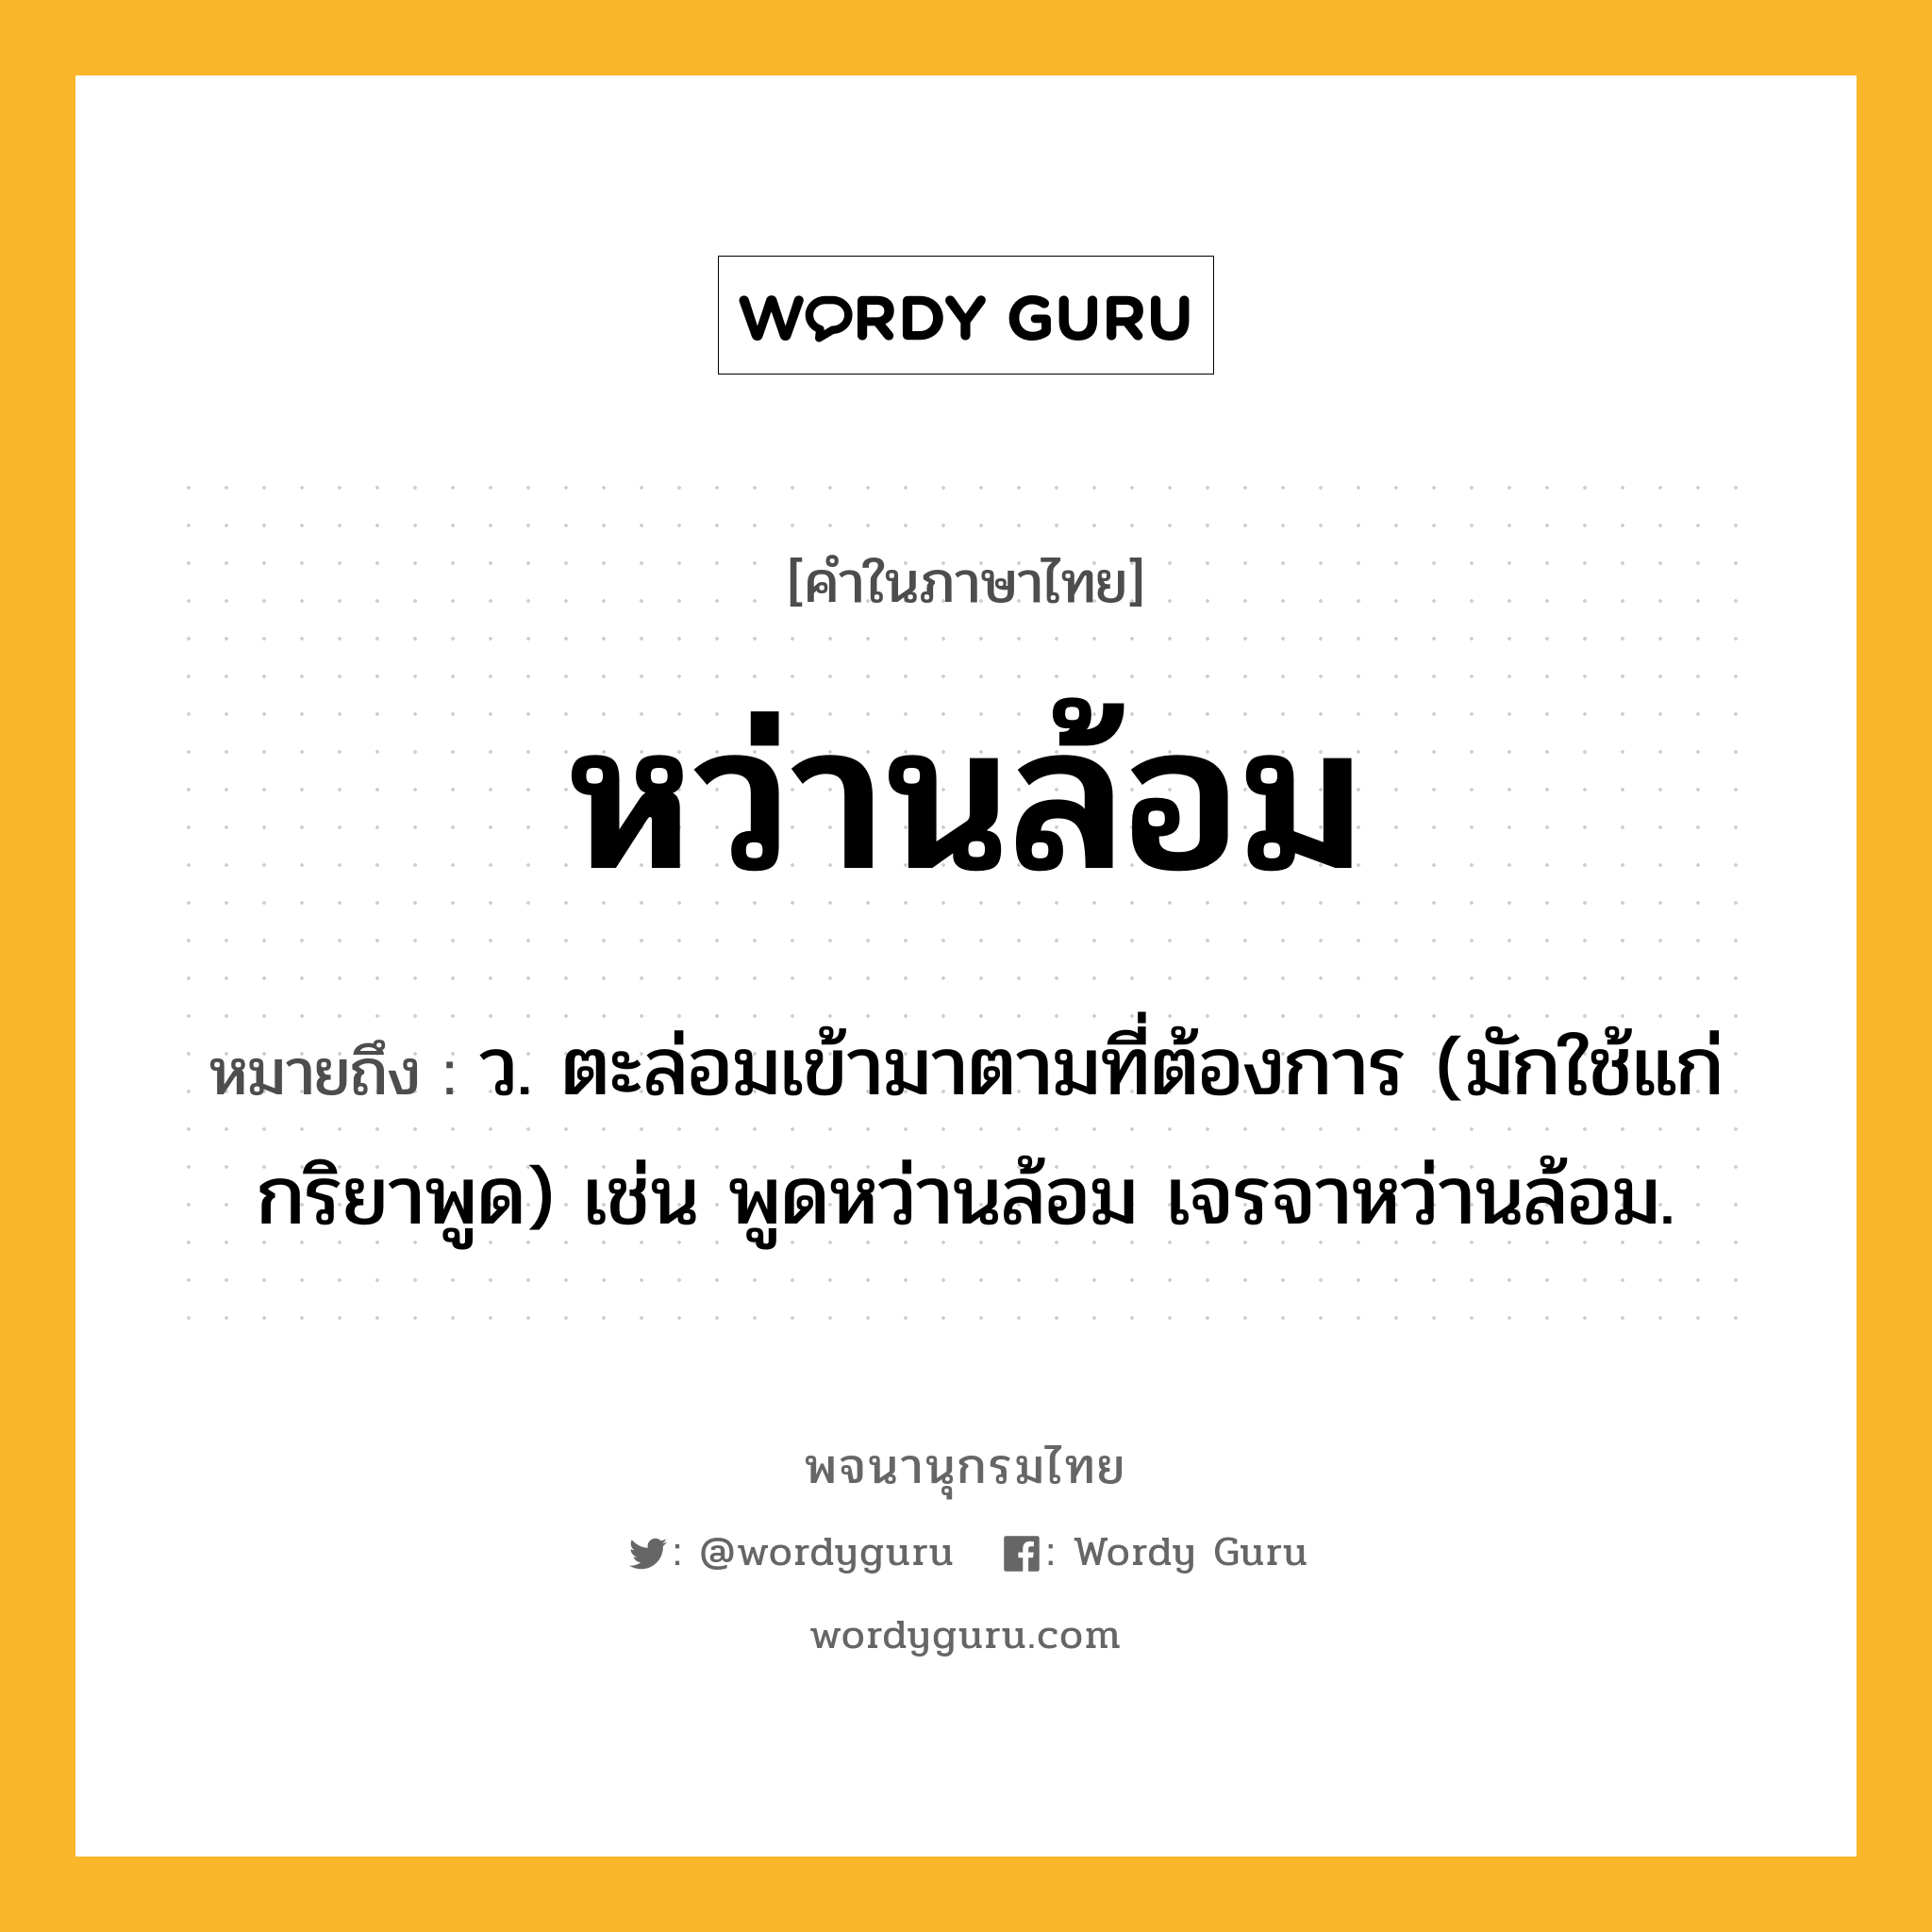 หว่านล้อม ความหมาย หมายถึงอะไร?, คำในภาษาไทย หว่านล้อม หมายถึง ว. ตะล่อมเข้ามาตามที่ต้องการ (มักใช้แก่กริยาพูด) เช่น พูดหว่านล้อม เจรจาหว่านล้อม.